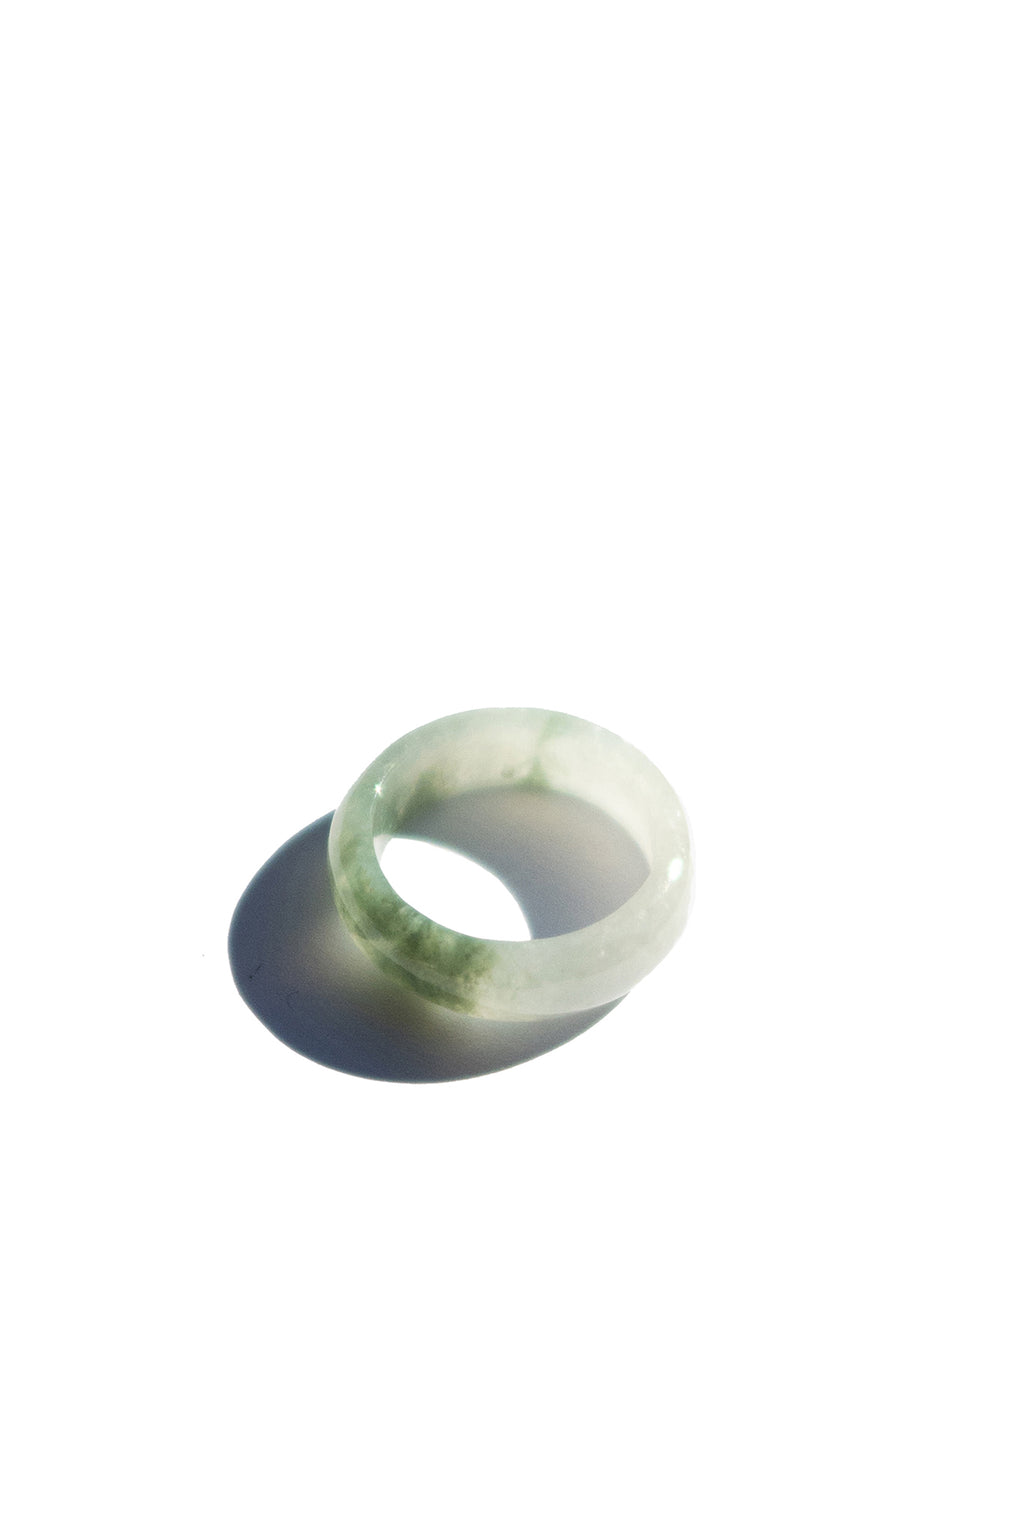 seree-Koi-Mottled-green-jade-ring